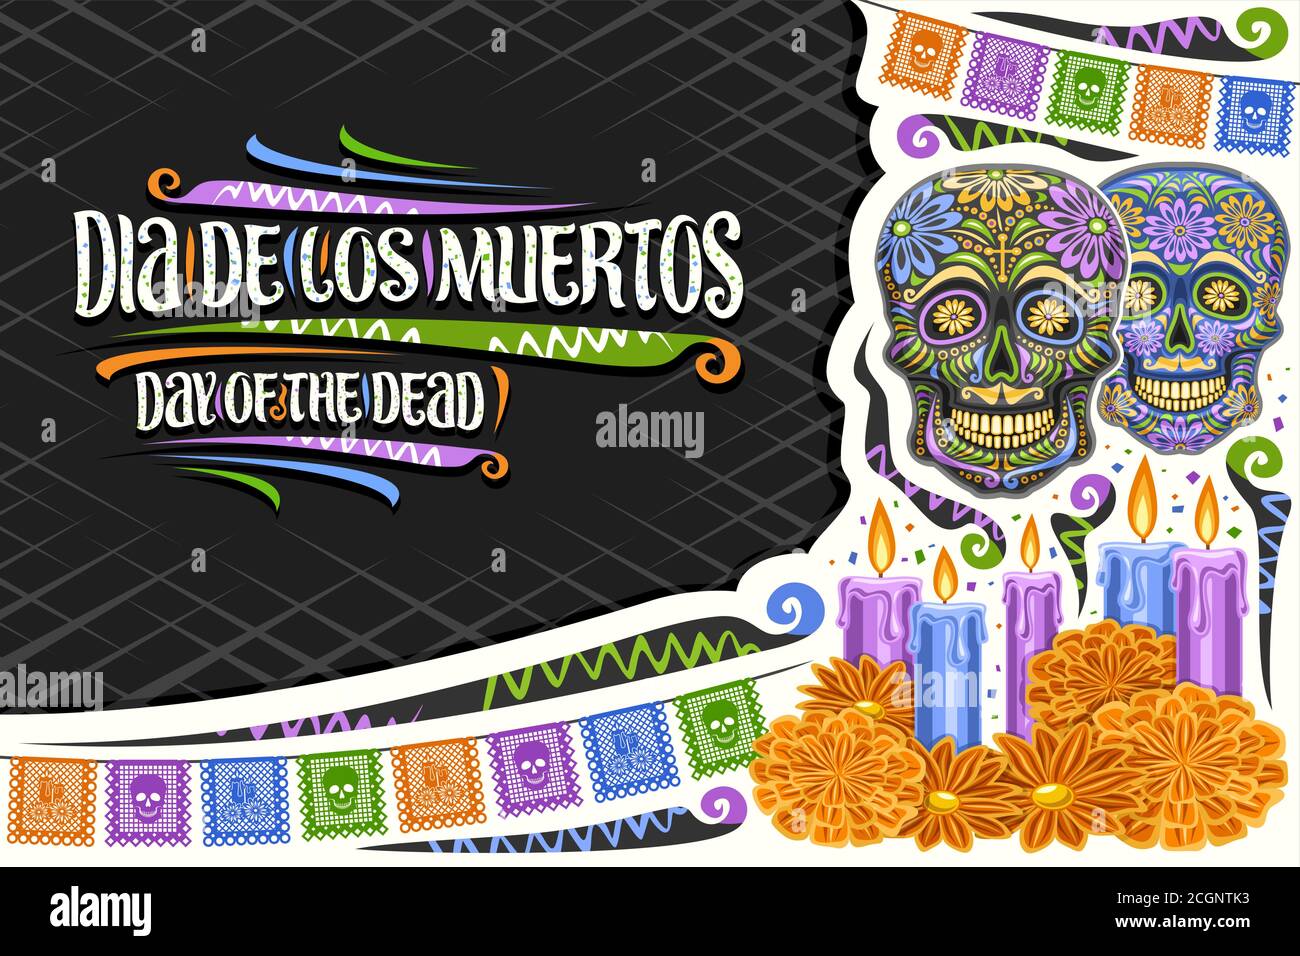 Vektor-Grußkarte für Dia de los Muertos mit Kopierfläche, dekorativ geschnittenem Papier-Layout mit Abbildung von Totenköpfen, bunten Fahnen und einzigartigem Brief Stock Vektor